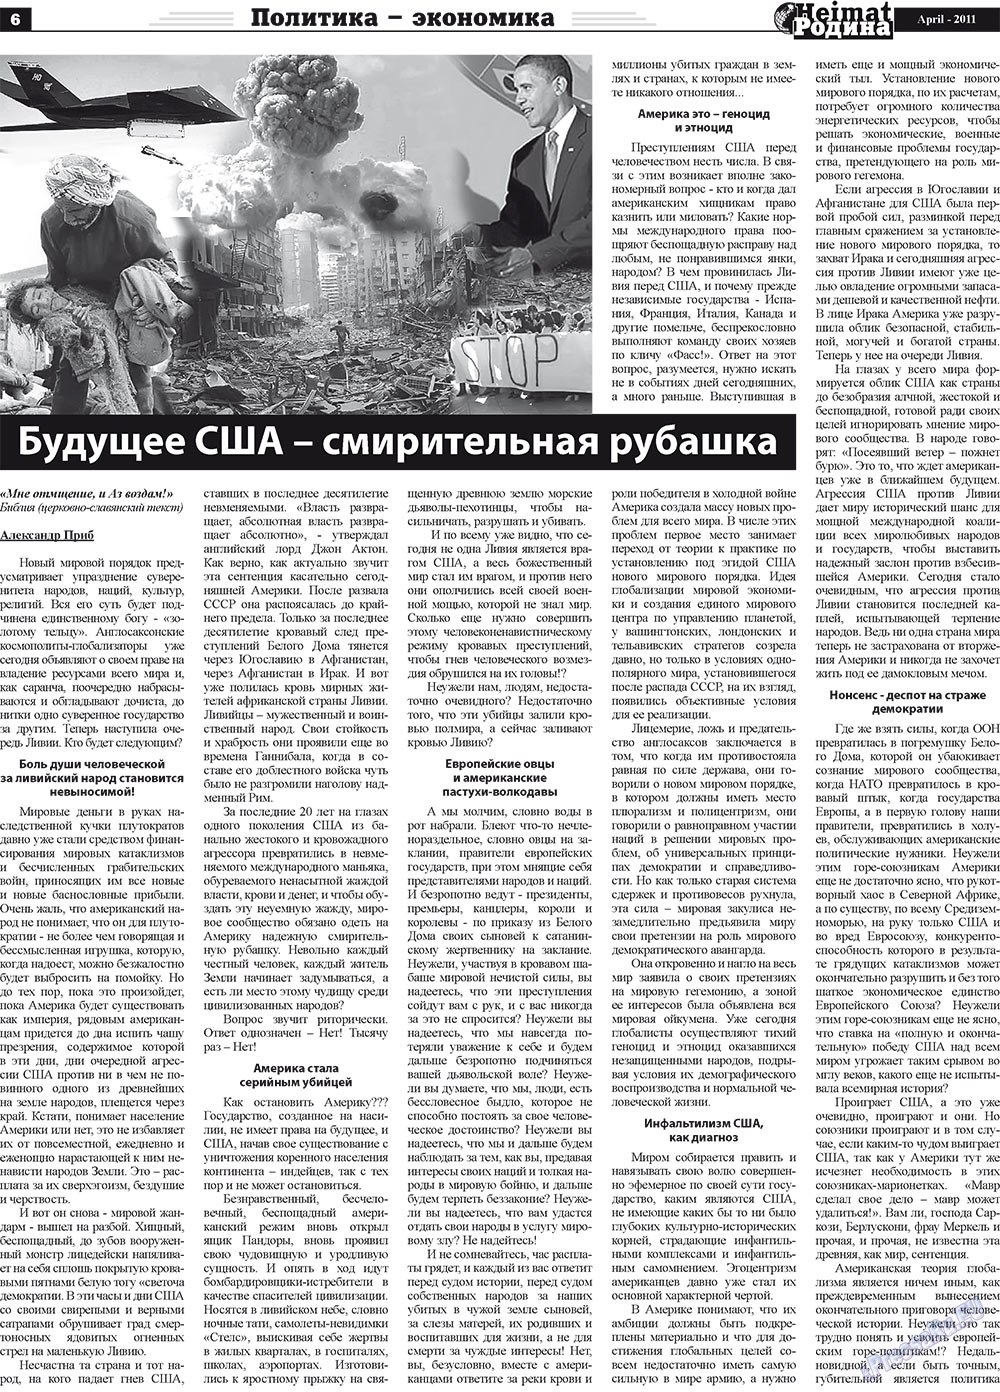 Heimat-Родина (газета). 2011 год, номер 4, стр. 6